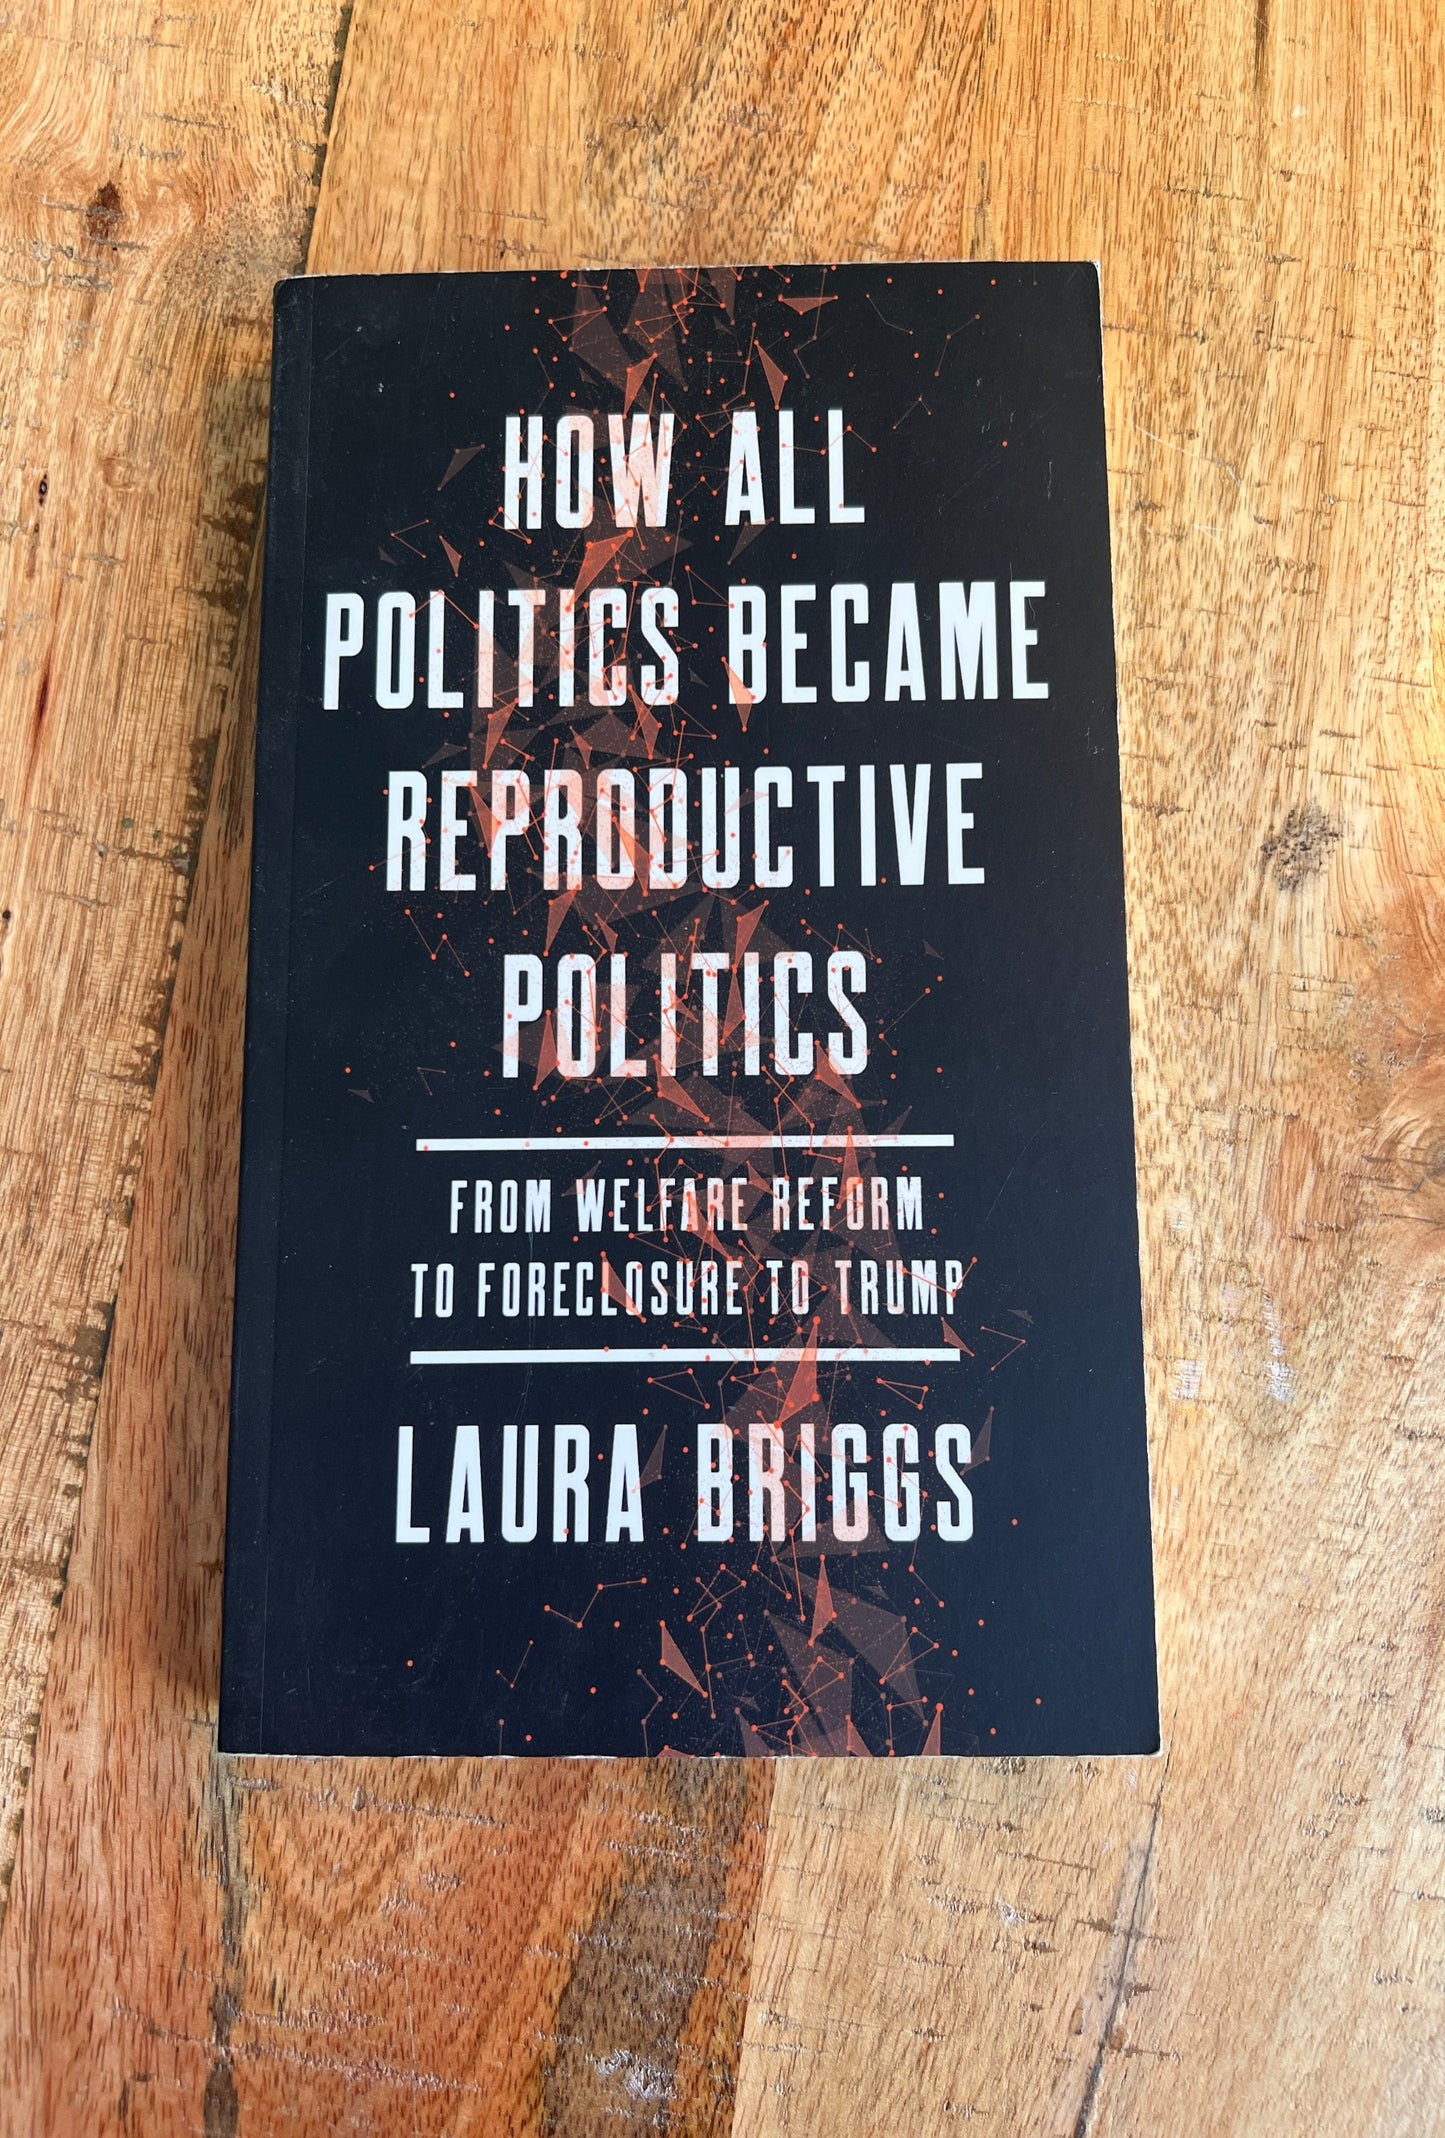 How All Politics Became Reproductive Politics